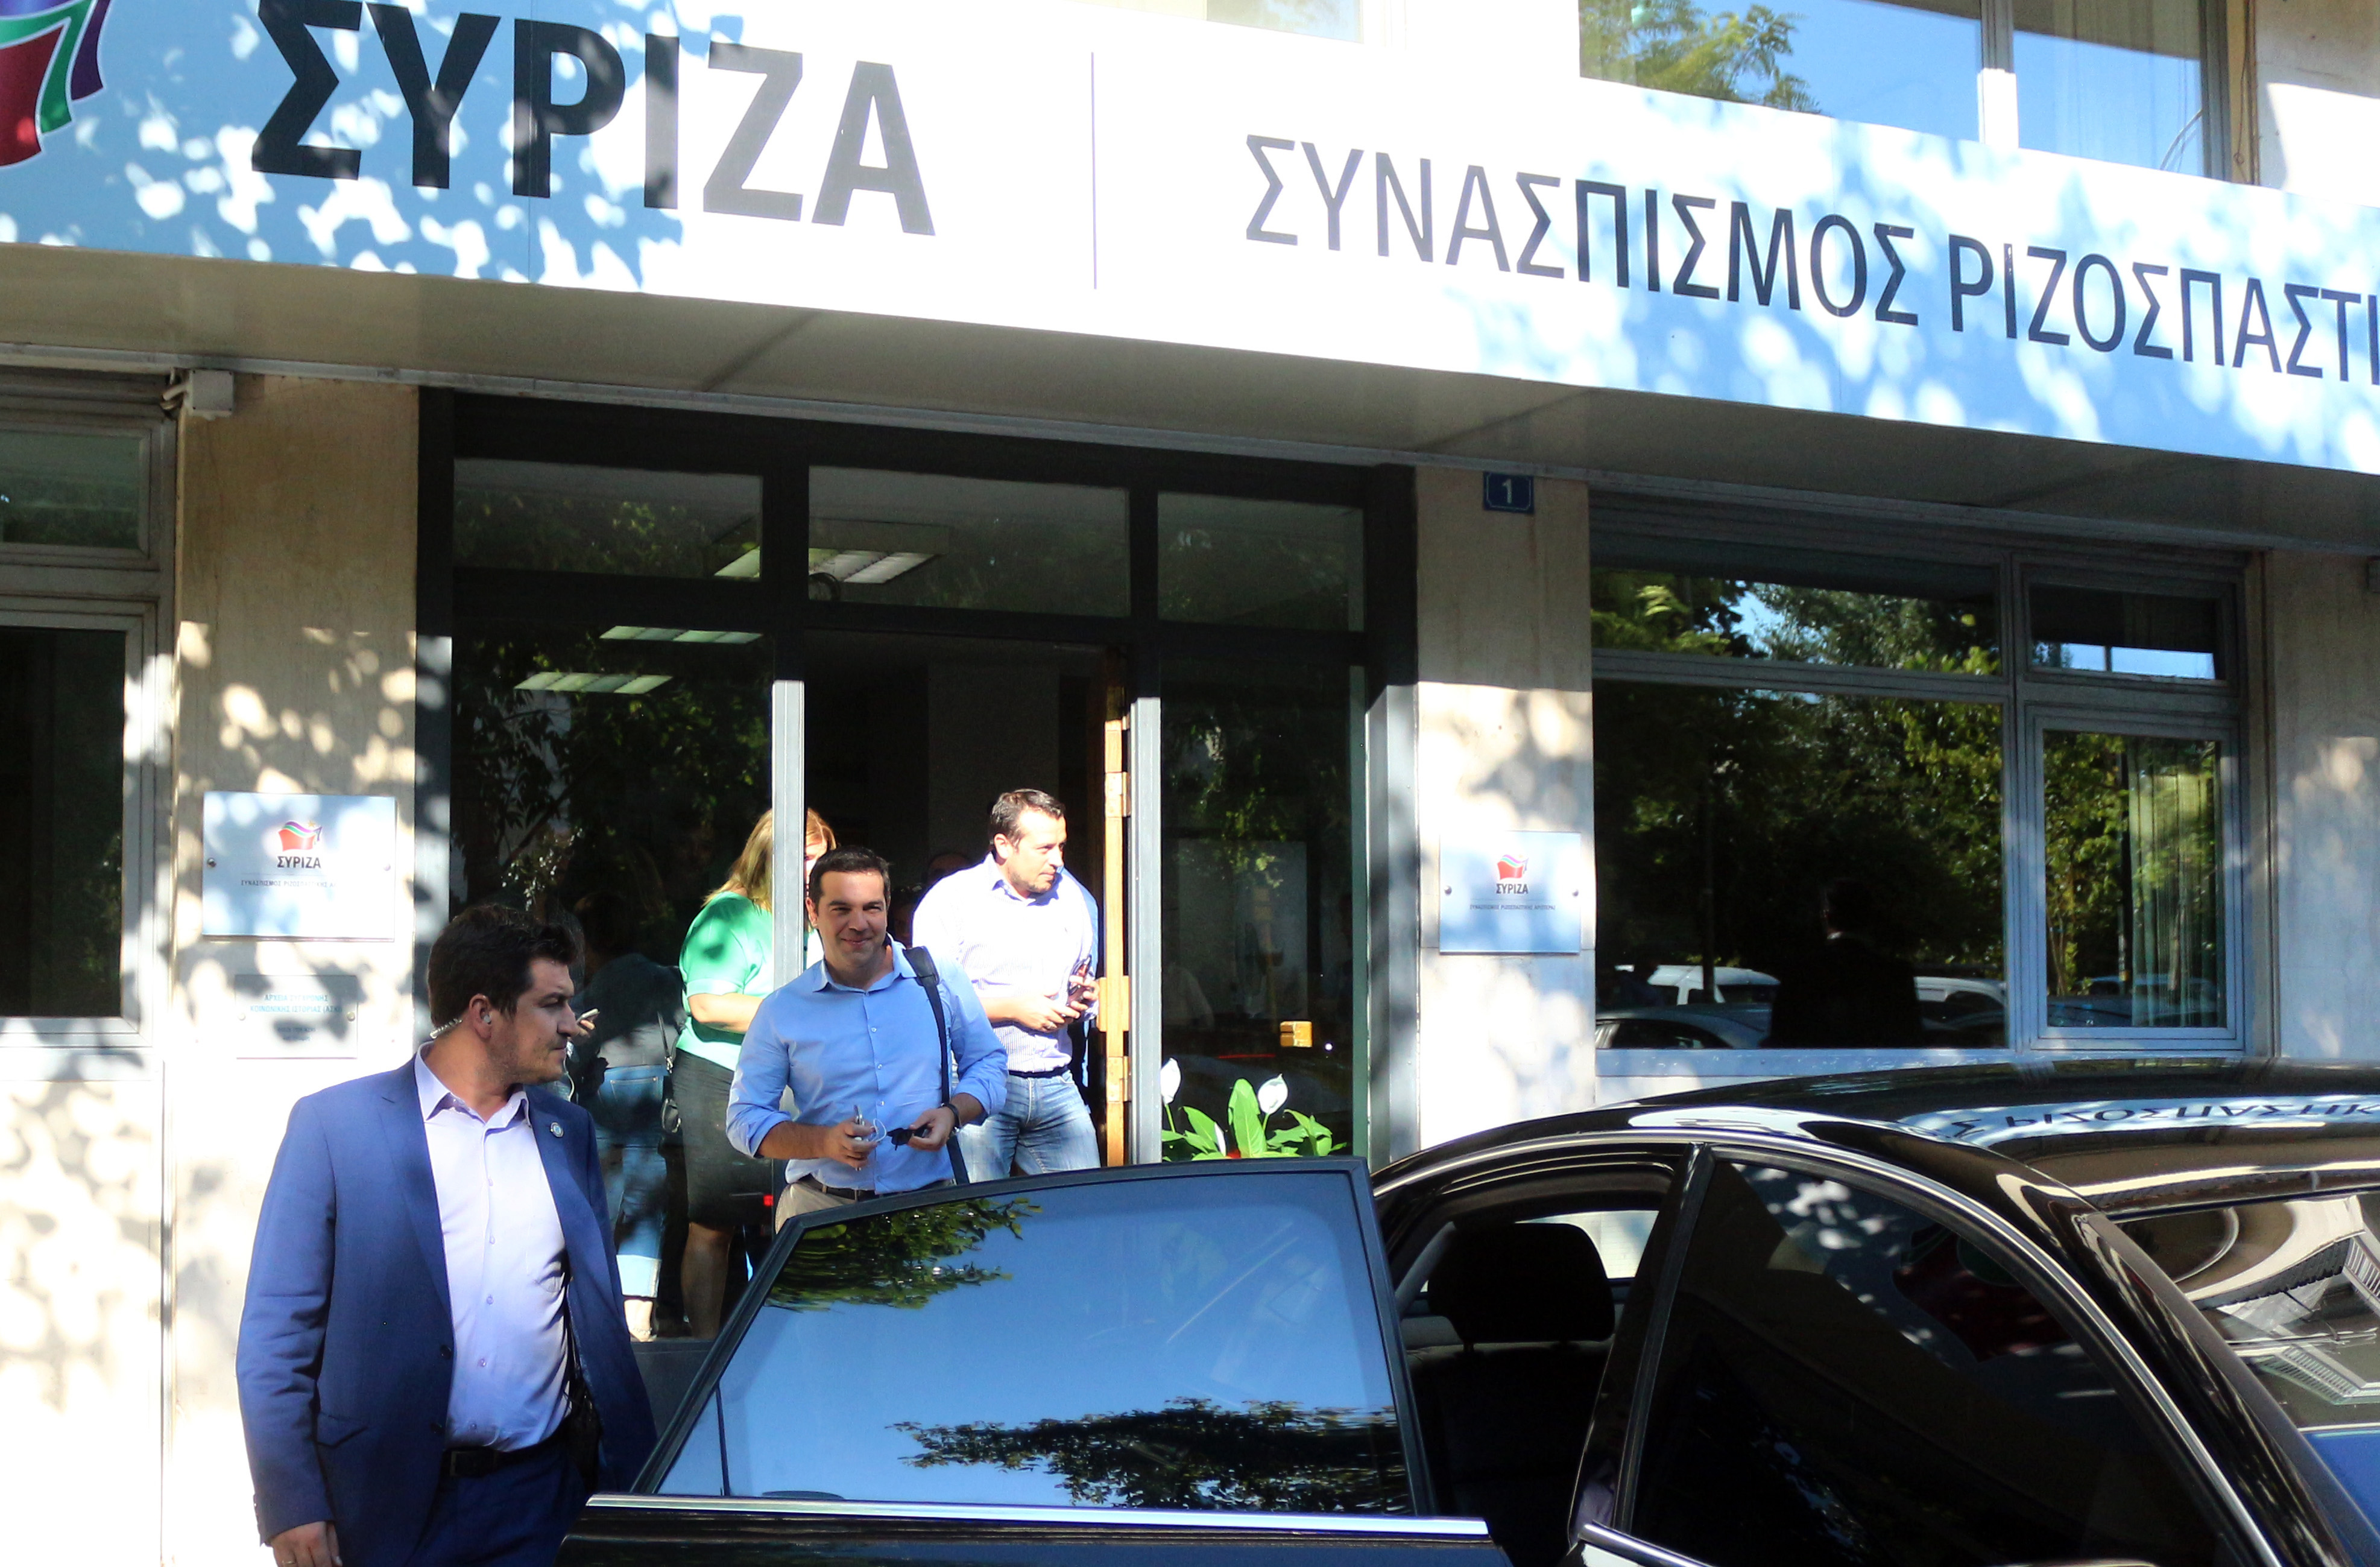 Σε νευρική κρίση ο κομματικός μηχανισμός του ΣΥΡΙΖΑ